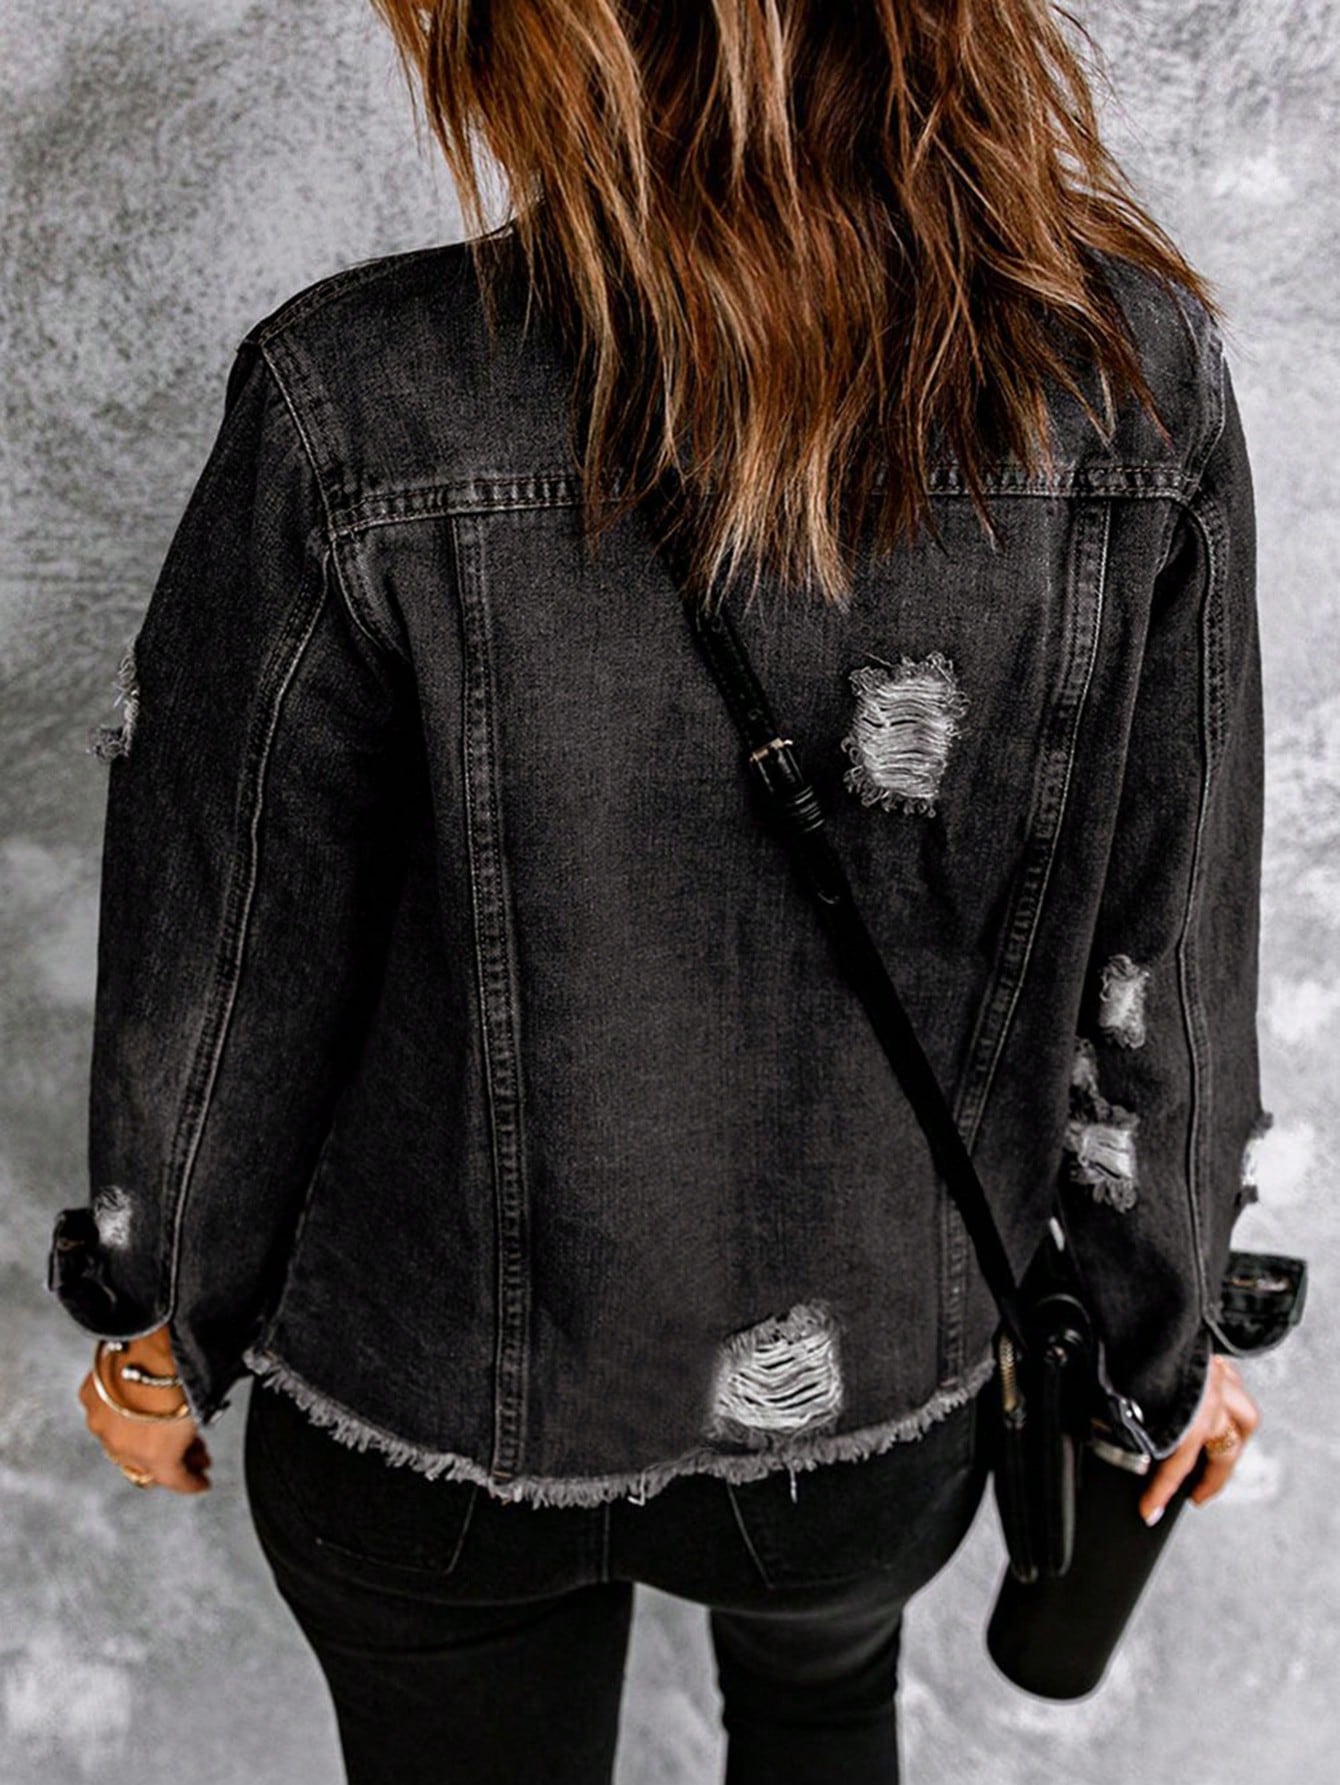 Denim Dream: Women's Distressed Frayed Denim Jacket - A Fashion Essential